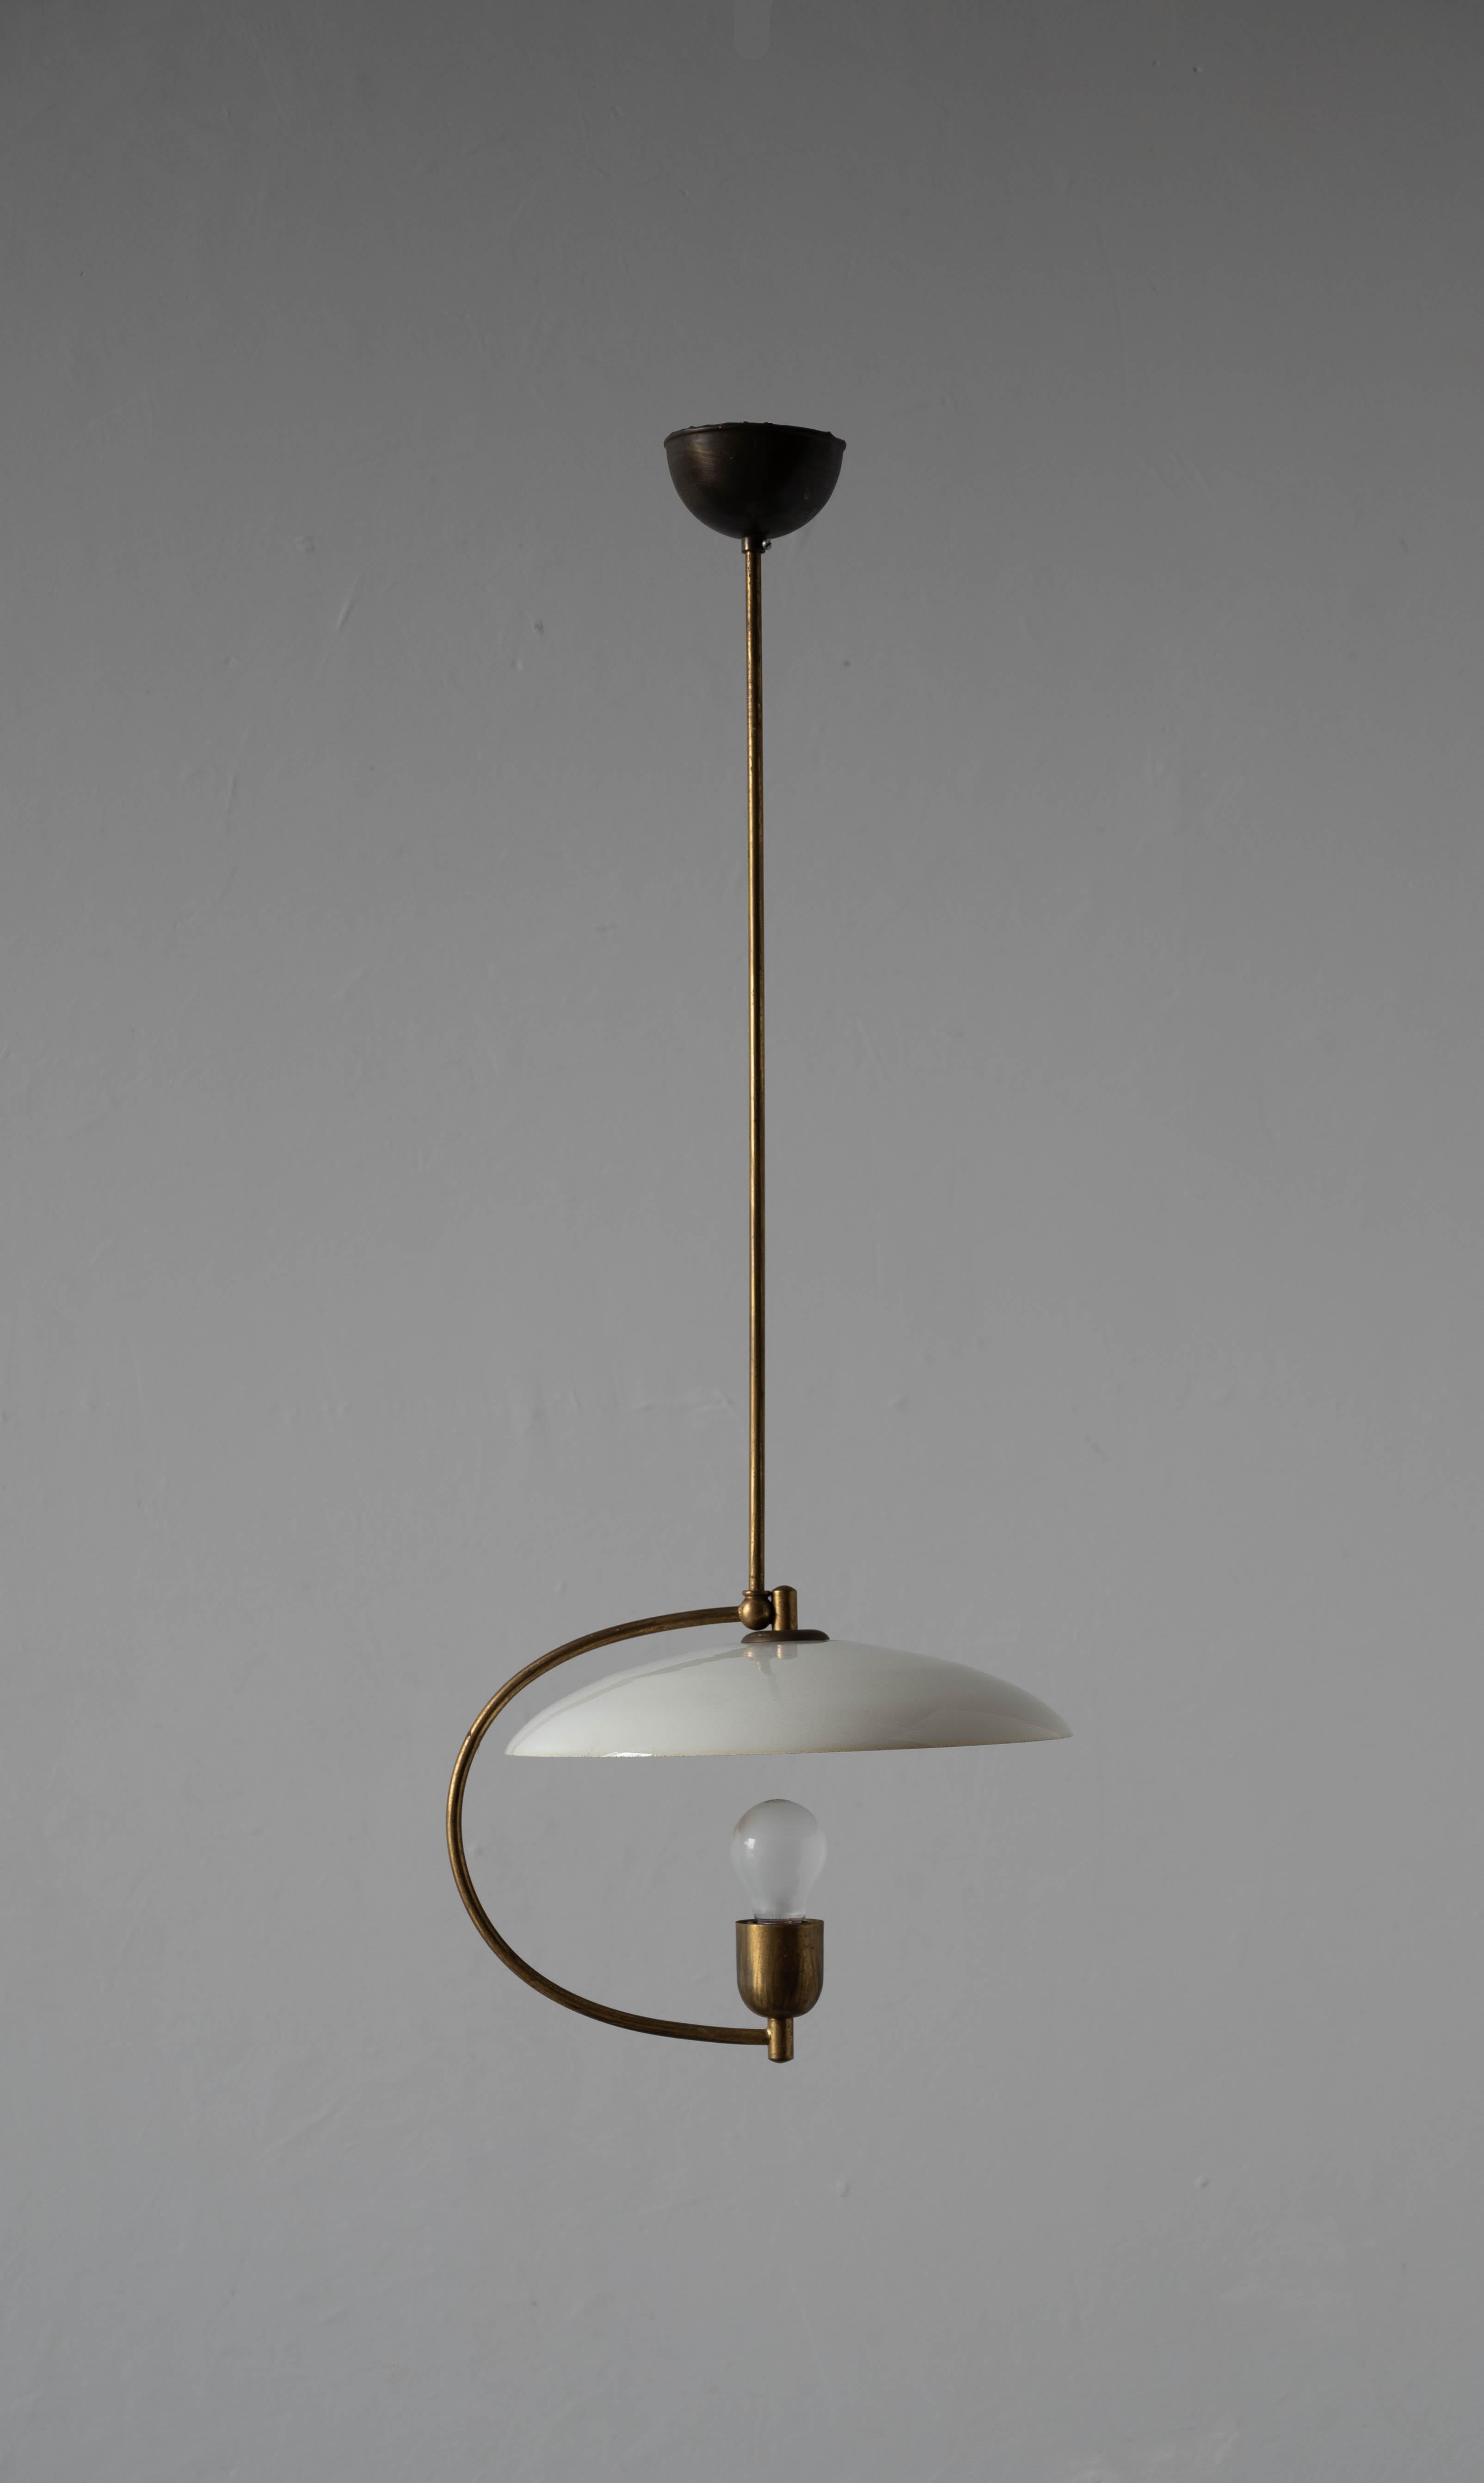 A pendant light by Ernst von Voss, Denmark, 1940s.